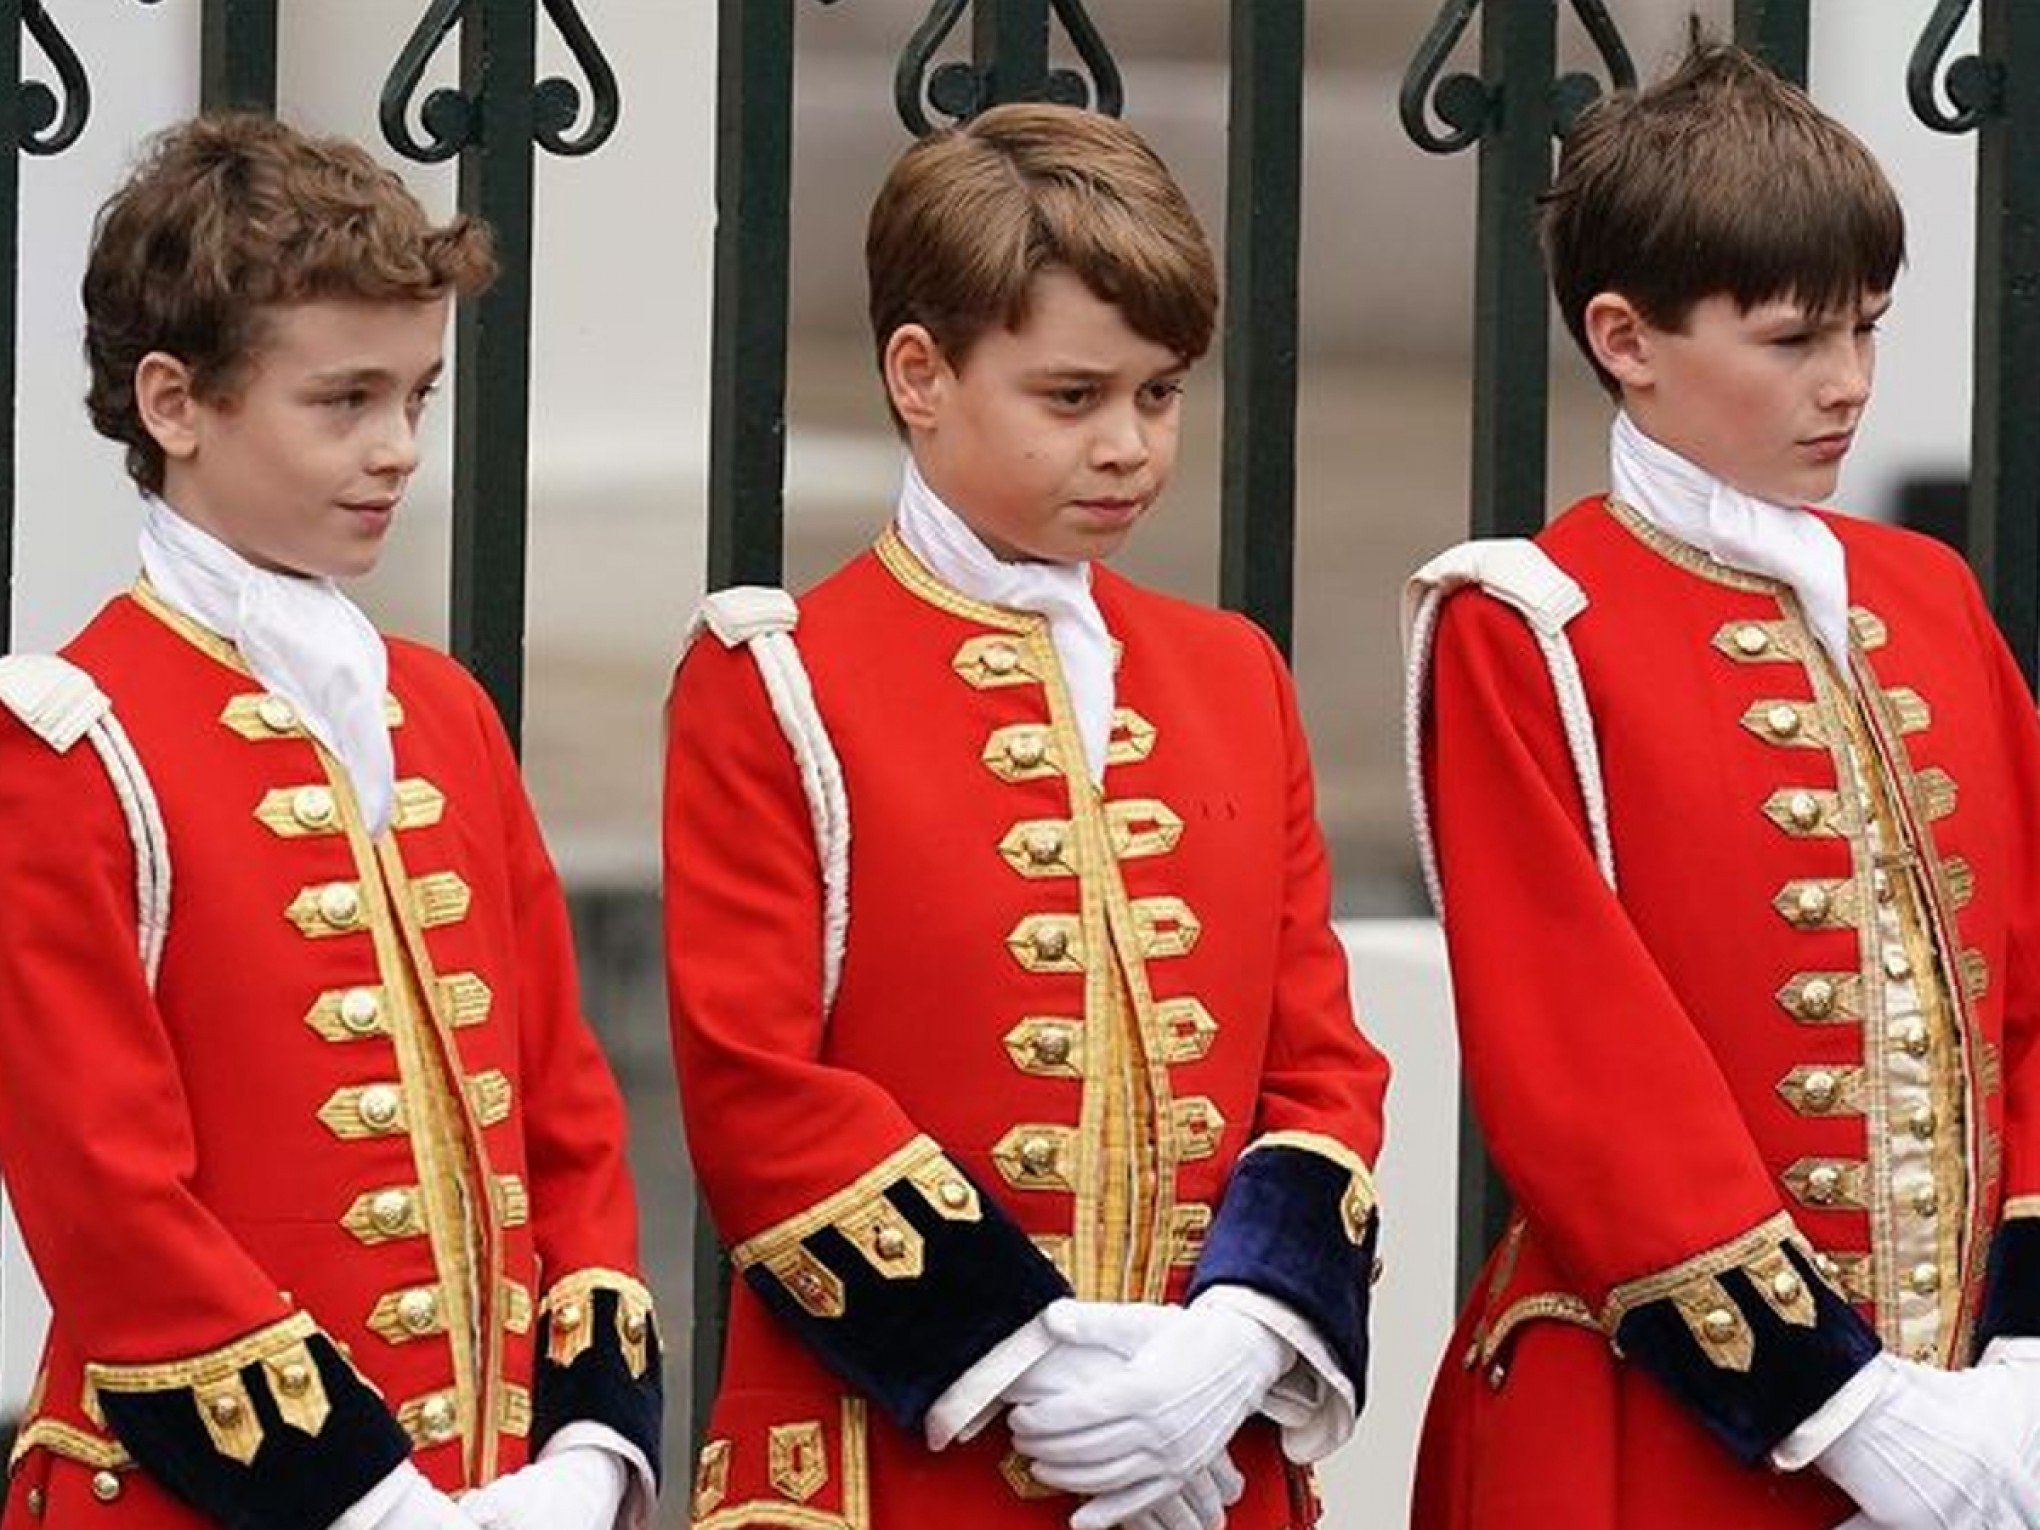 Príncipe George convenceu o avô, rei Charles III, a romper tradição secular por receio de bullying